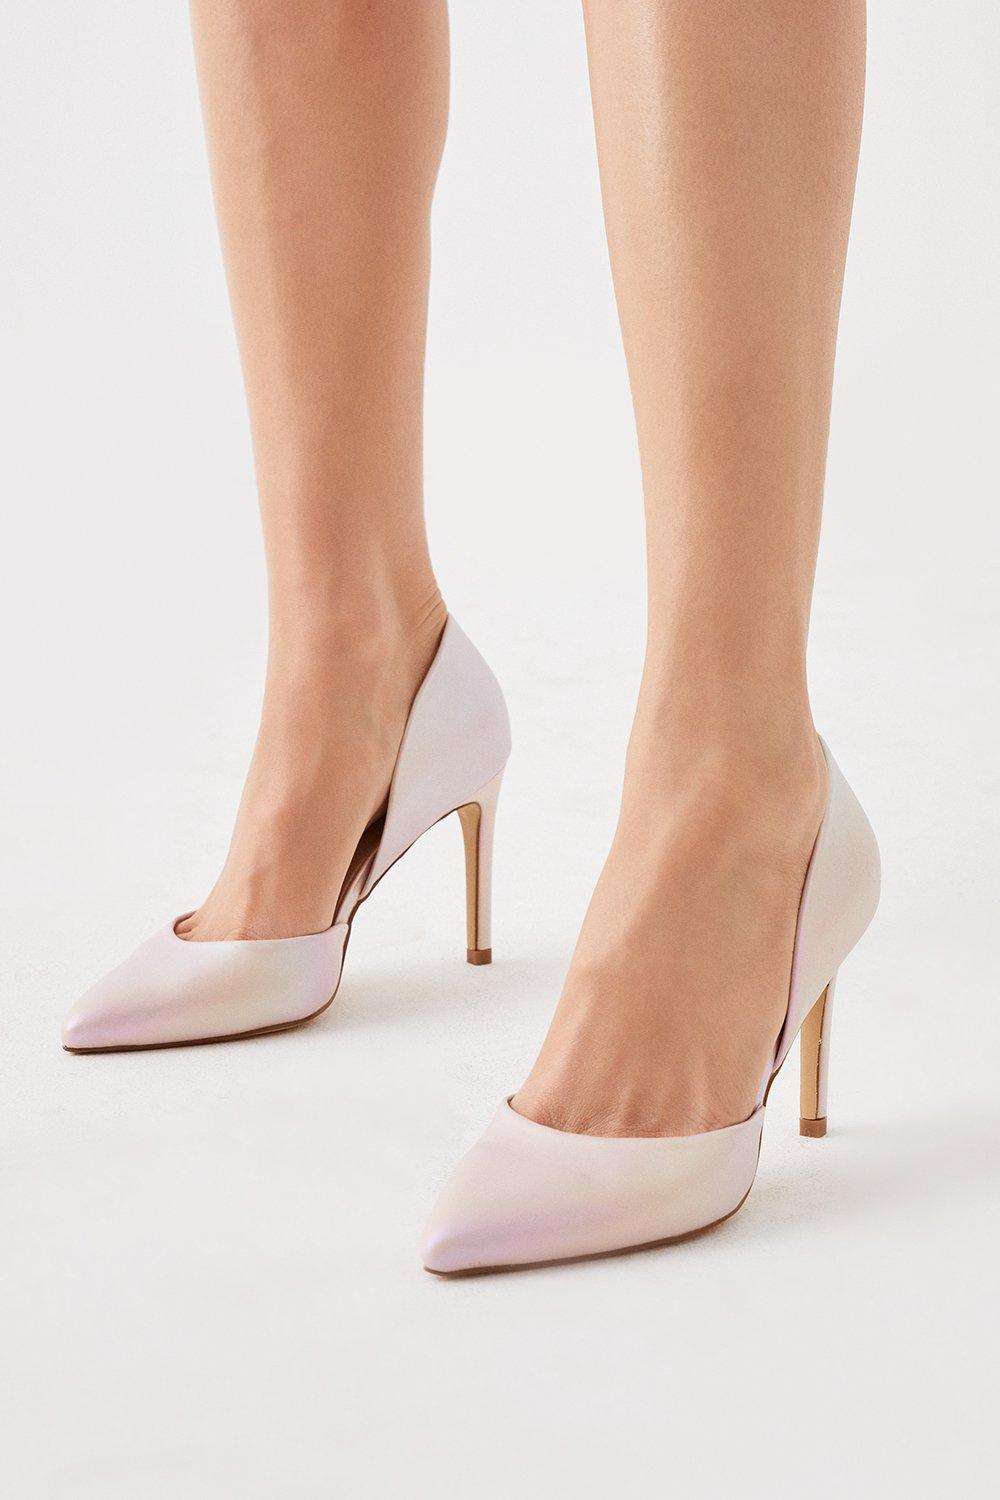 Heels | Pastel Ombre Two Part Court Shoe | Coast